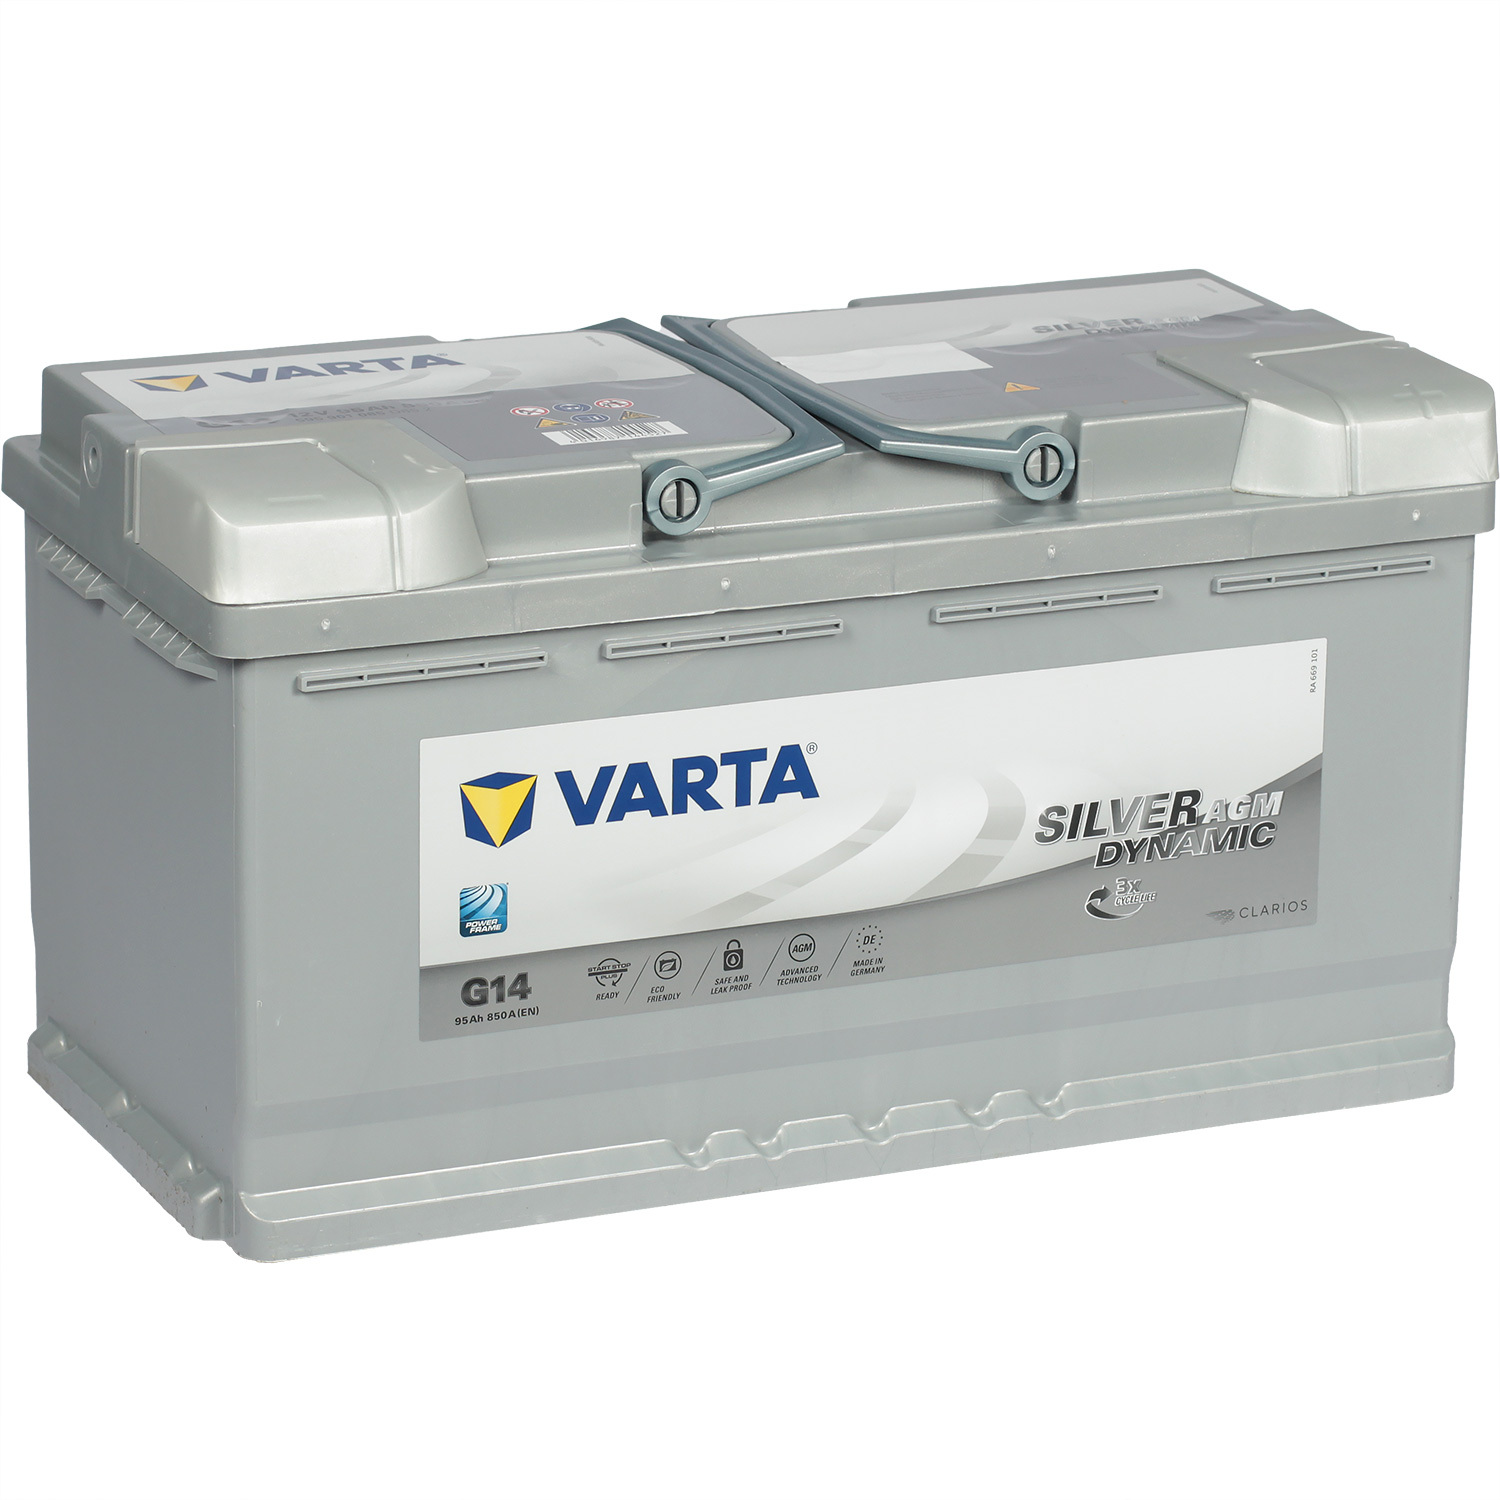 Varta Автомобильный аккумулятор Varta AGM G14 95 Ач обратная полярность L5 varta автомобильный аккумулятор varta 45 ач прямая полярность b24r